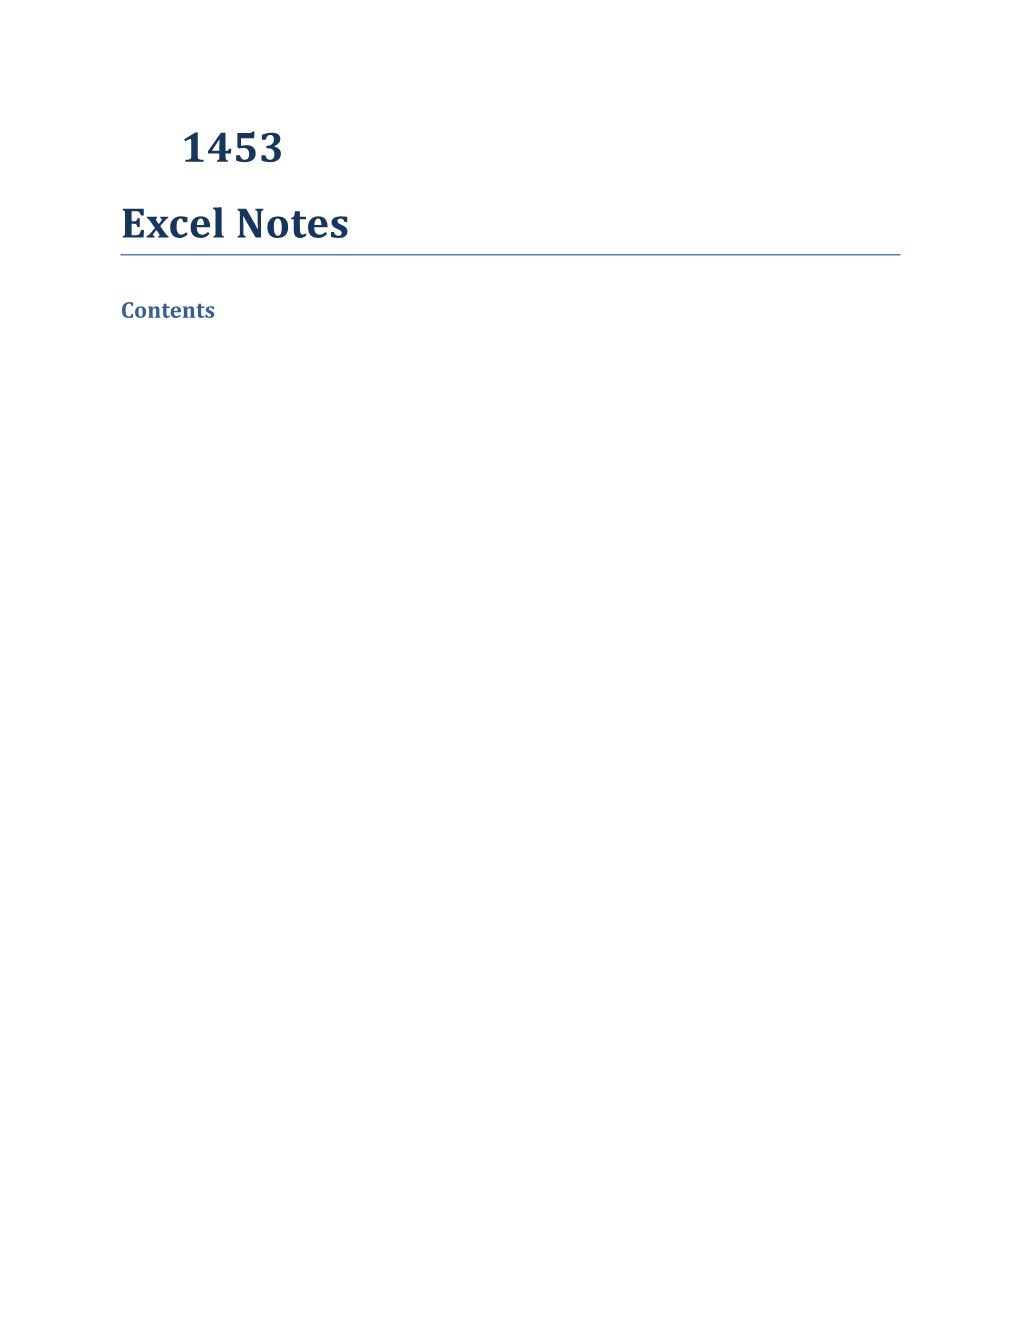 Common Scenarios for Using Excel Include